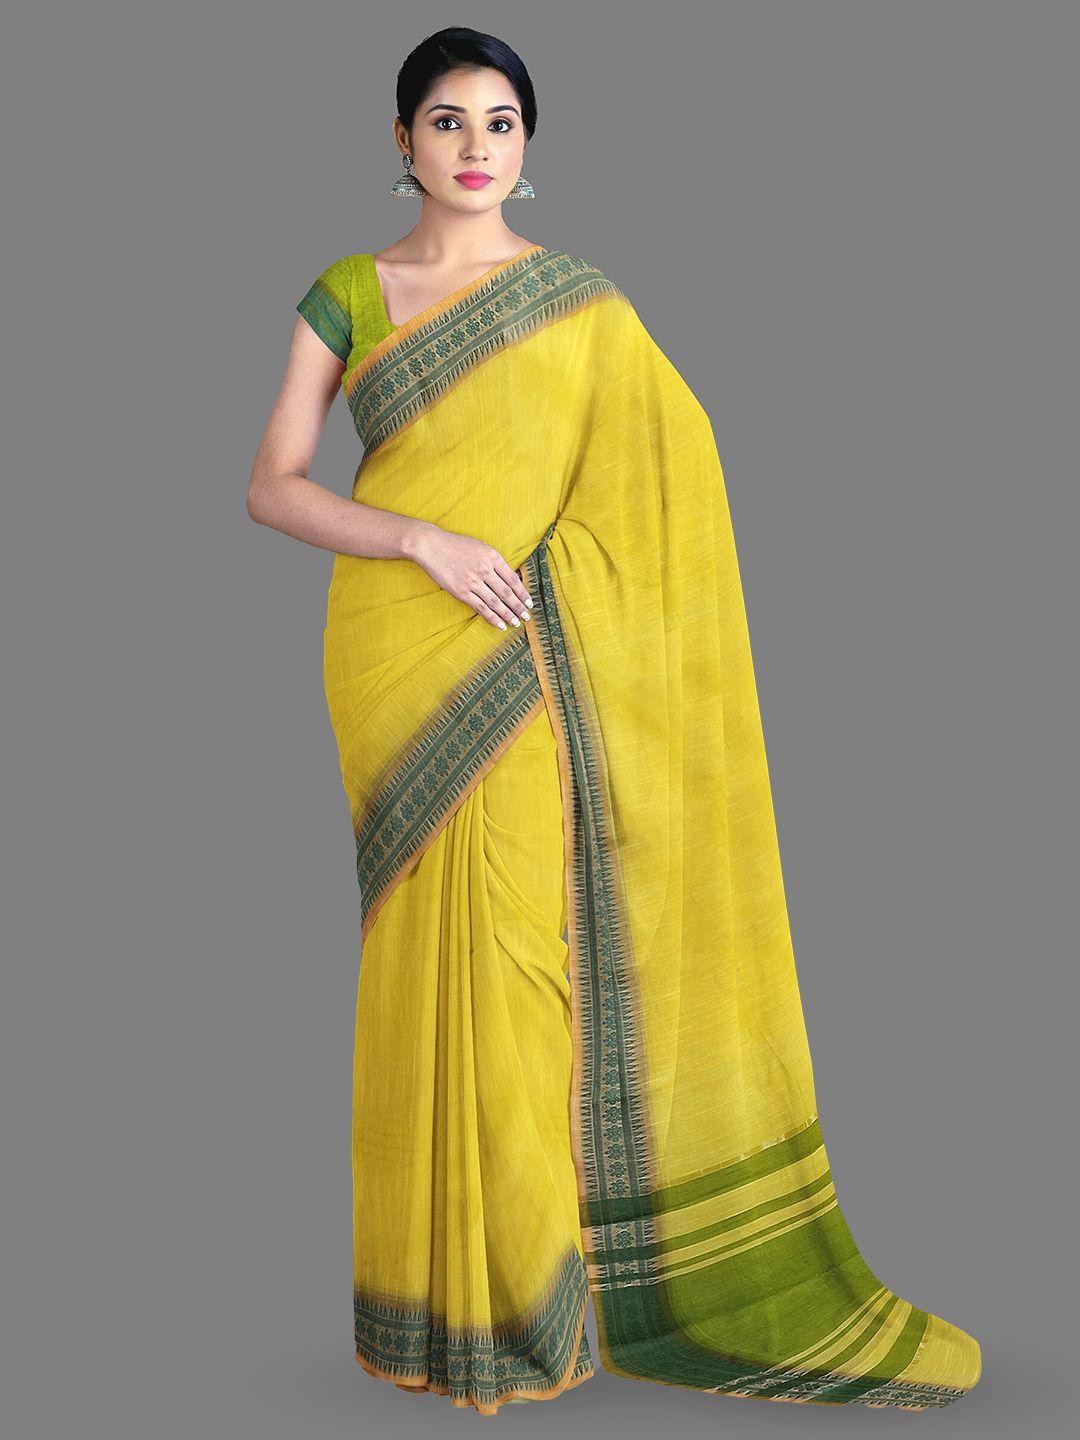 the chennai silks pure cotton narayan peth saree